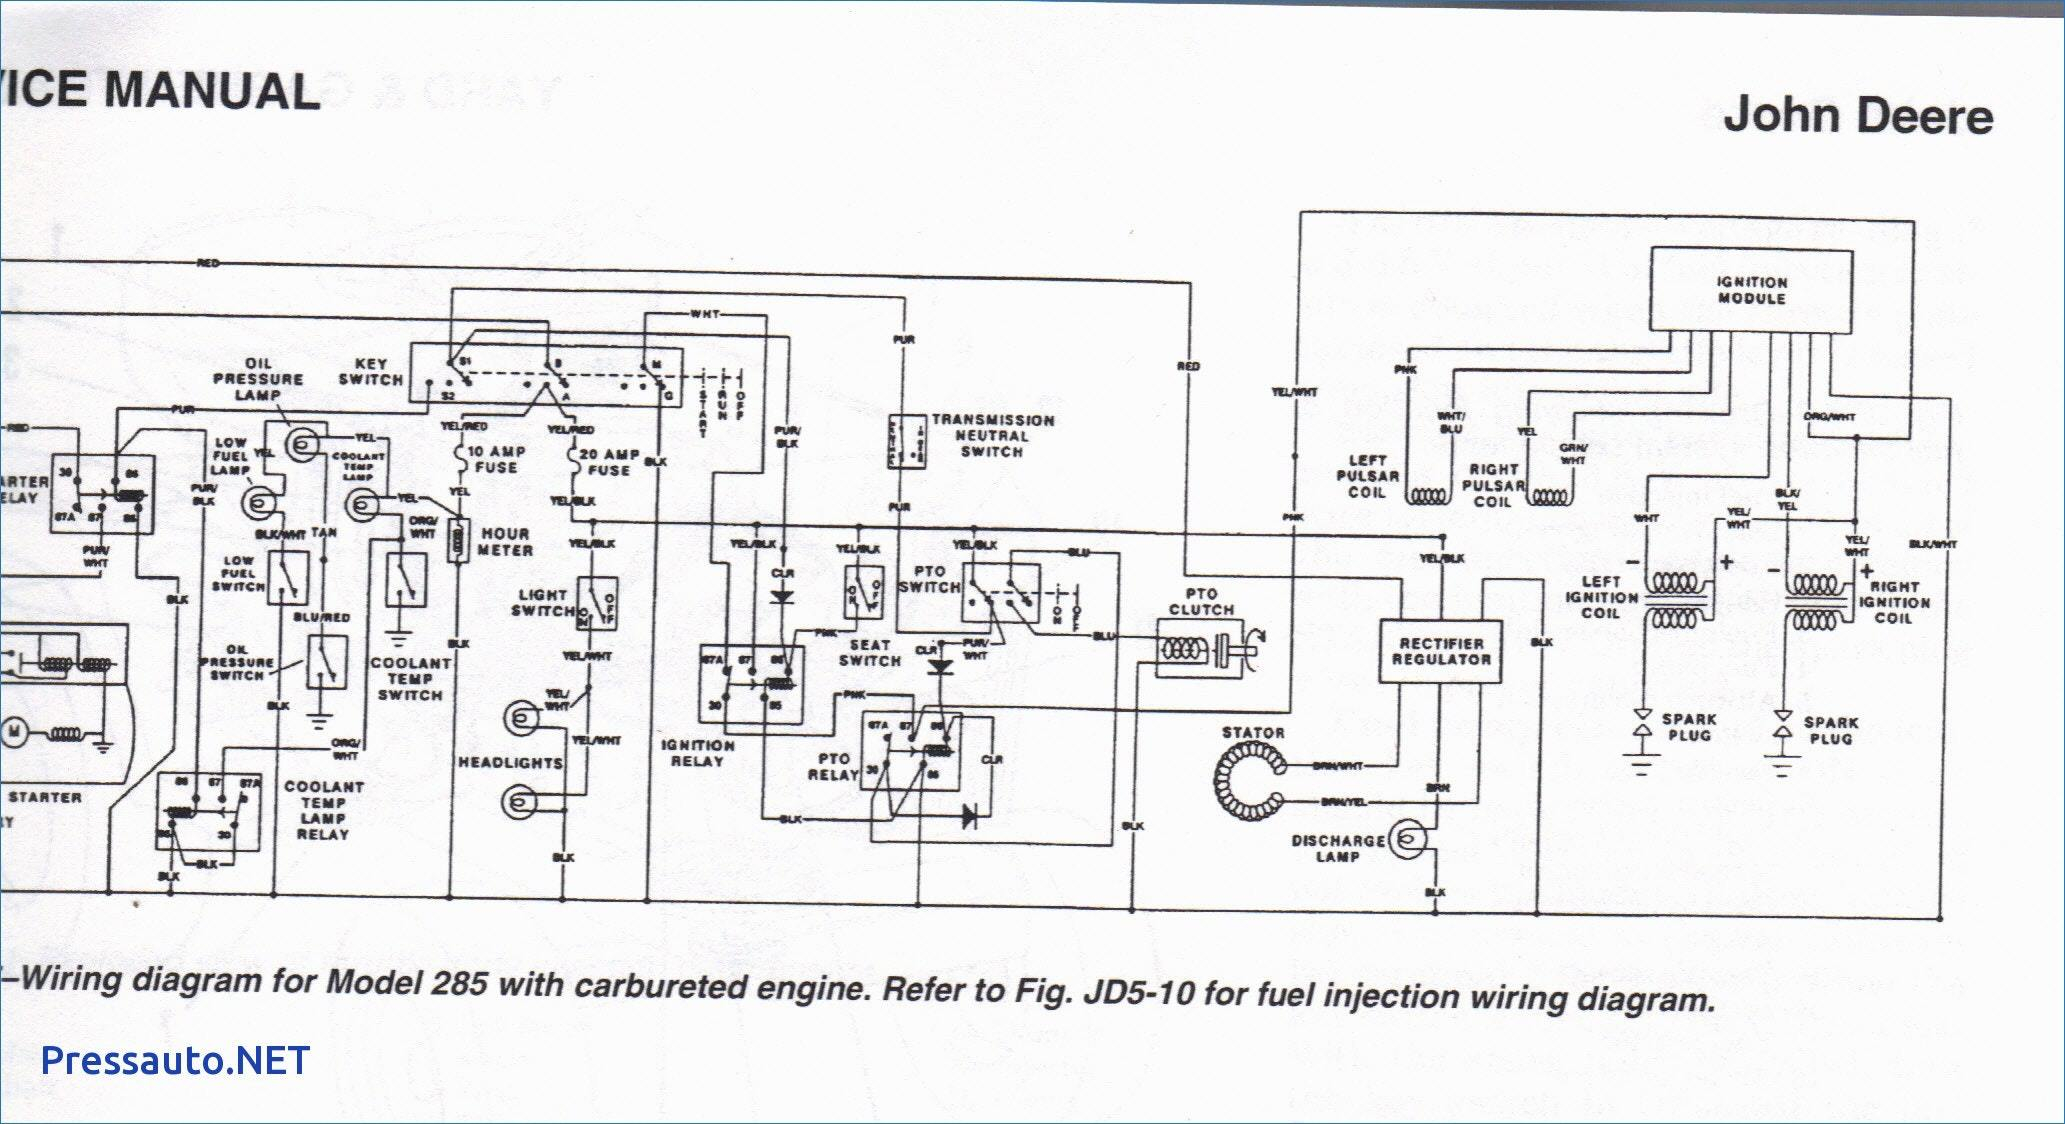 John Deere D140 Belt Diagram John Deere D140 Wiring Diagram Wiring Diagram Article